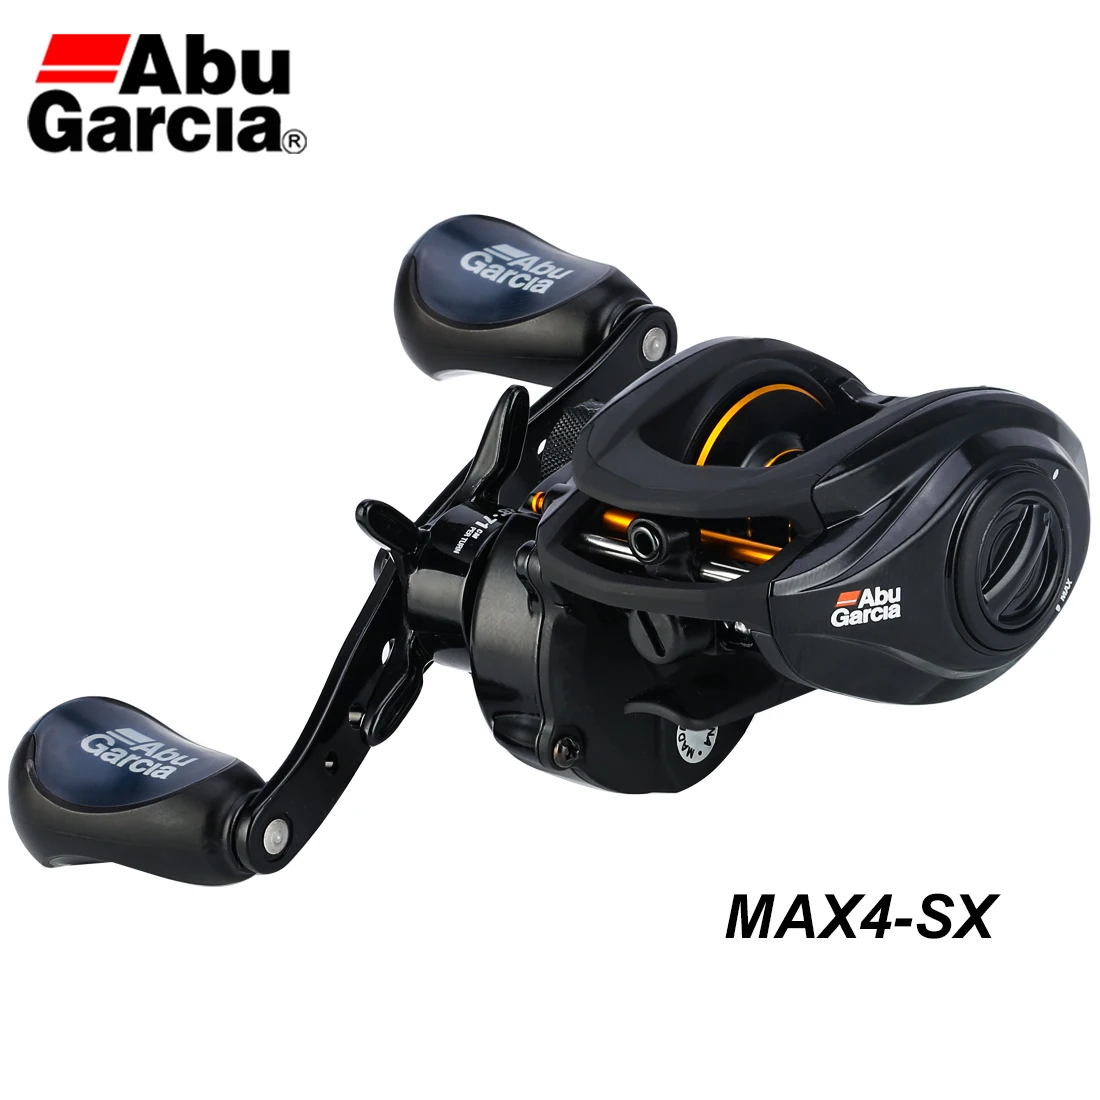 Abu Garcia MAX4-SX yeni balıkçılık Reel 7 + 1BB su geçirmez korozyona  dayanıklı 7.1:1 Max sürükle 8kg 209g Baitcasting Reel balıkçılık tekerlek